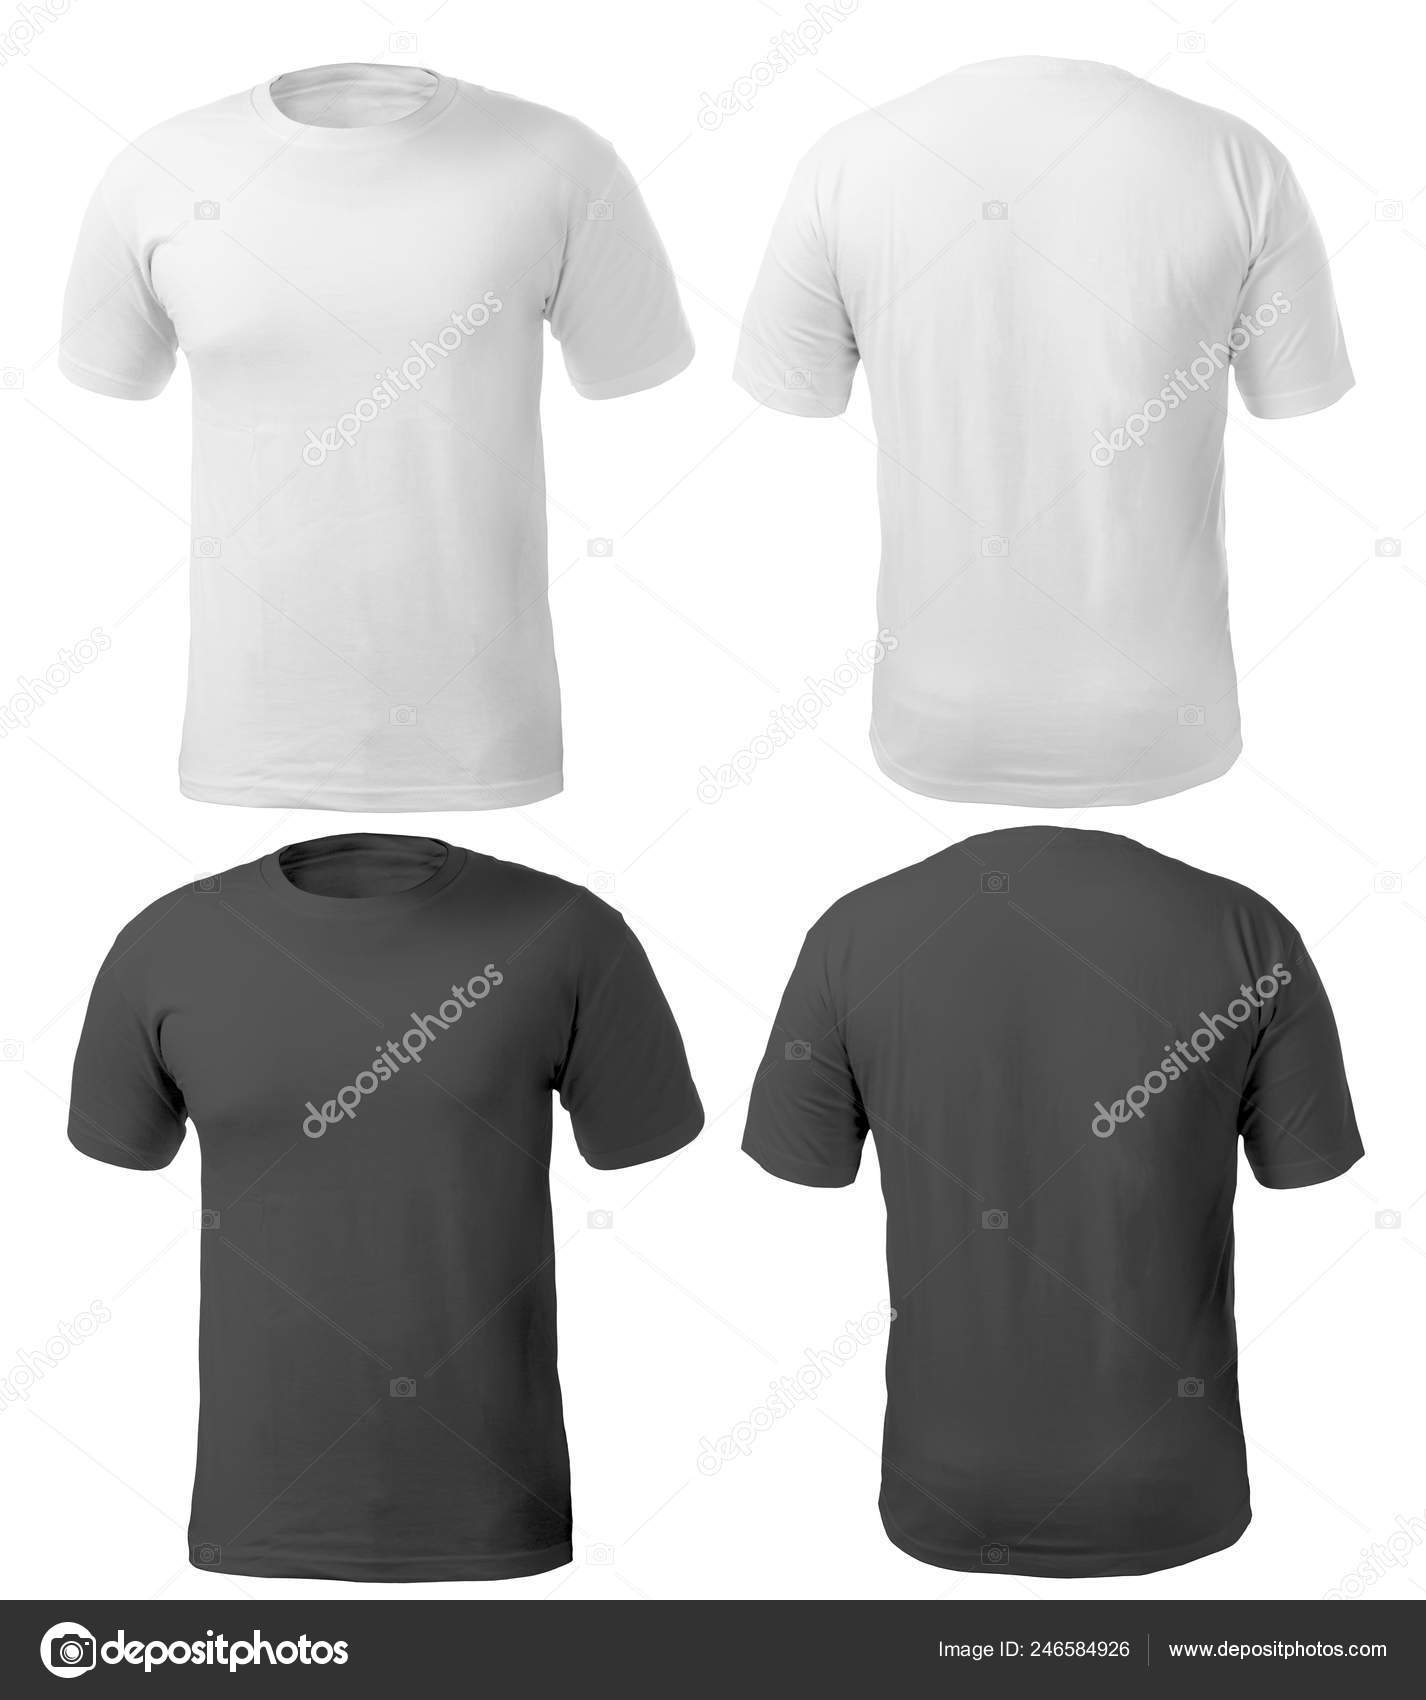 Vista frontal y trasera de la camiseta: fotografía de stock